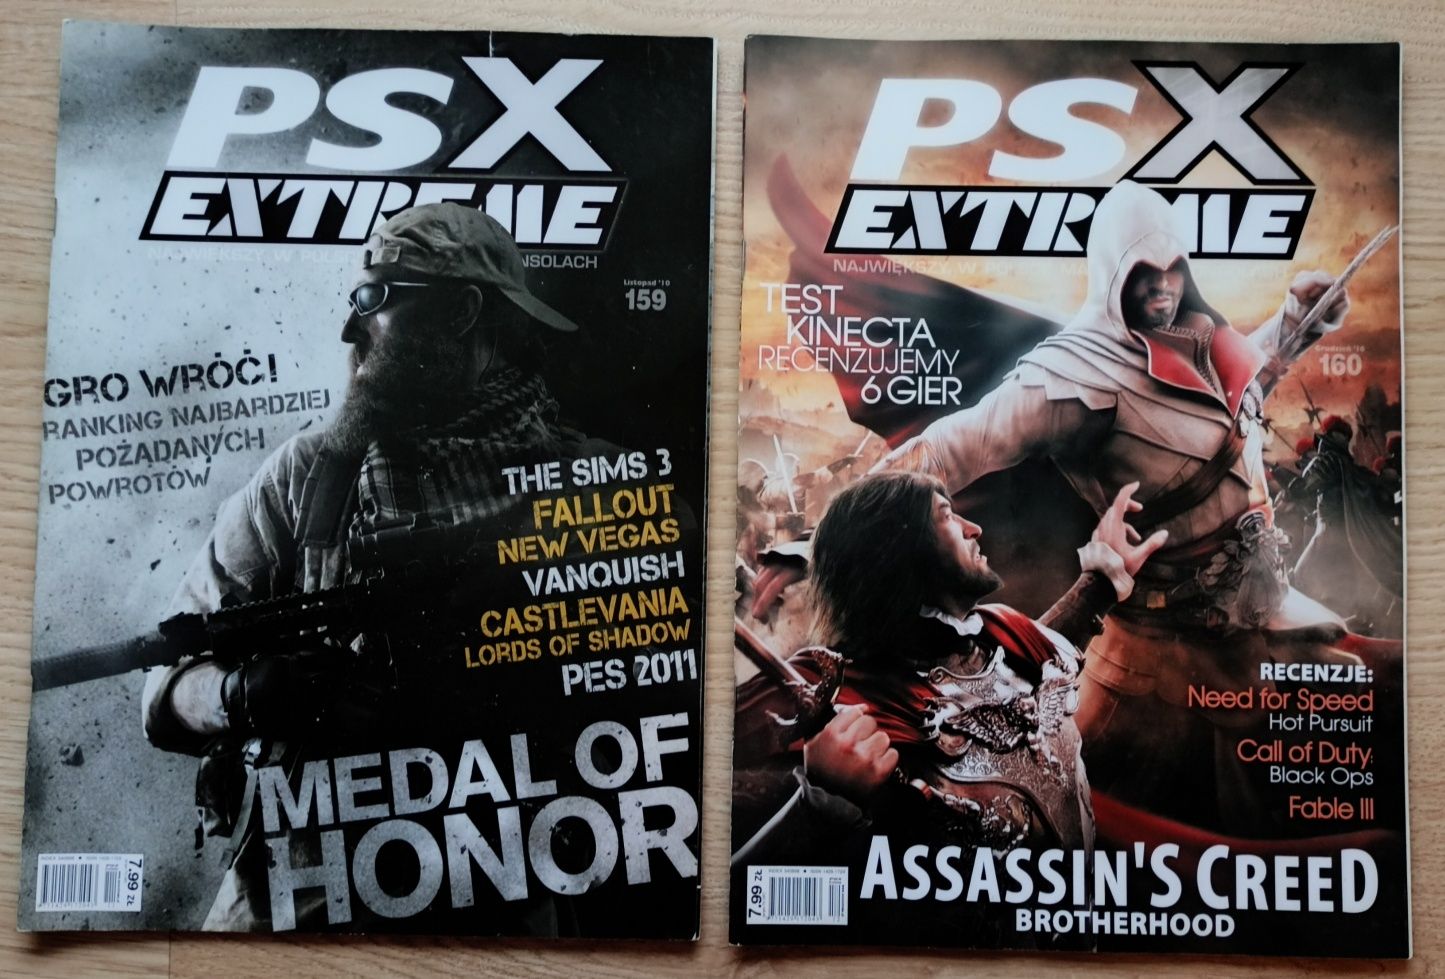 PSX Extreme czasopismo rocznik 2010